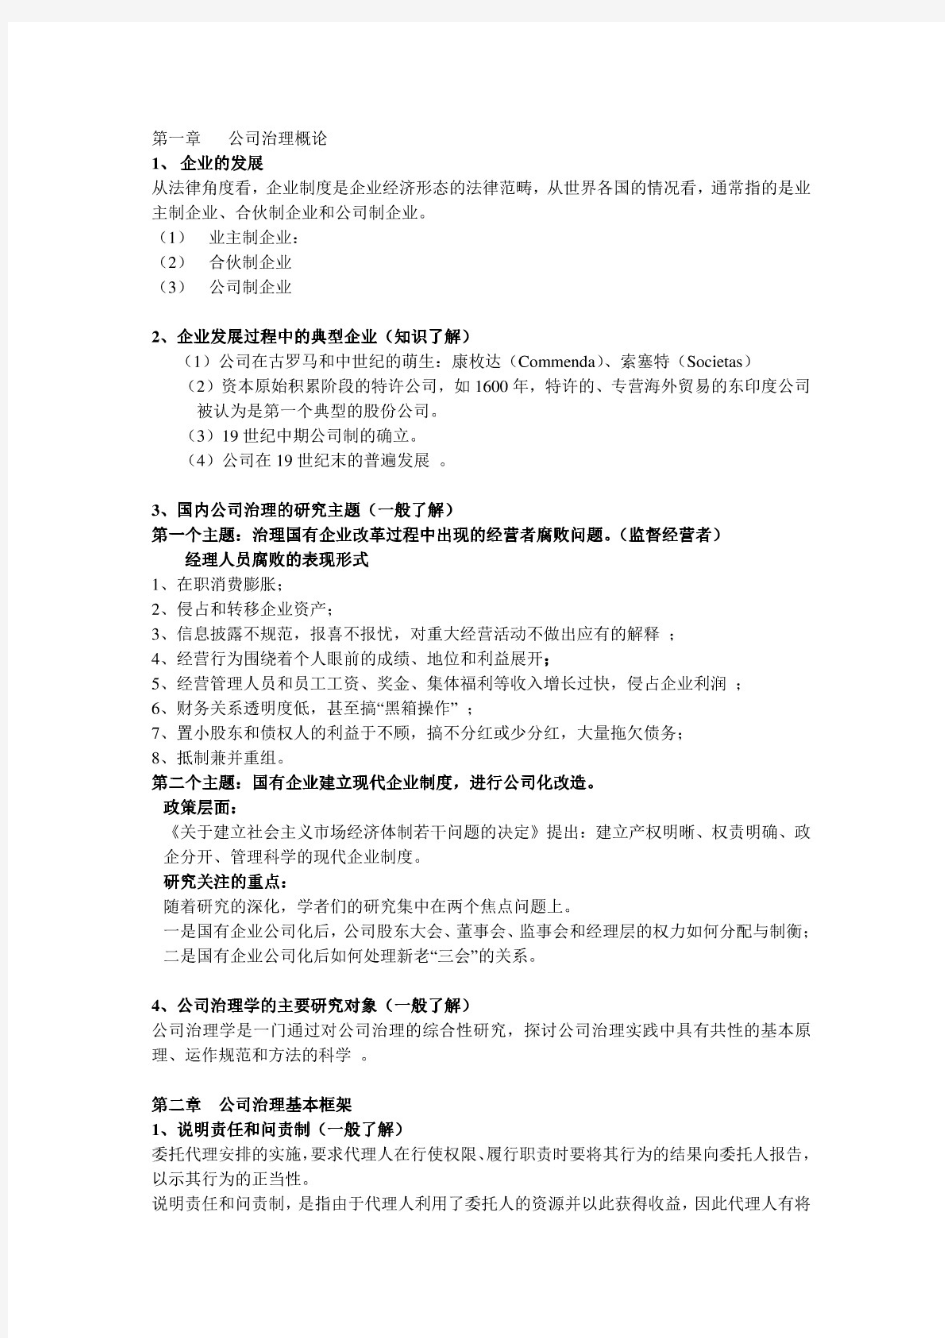 公司治理学李维安公司治理资料整理.pdf